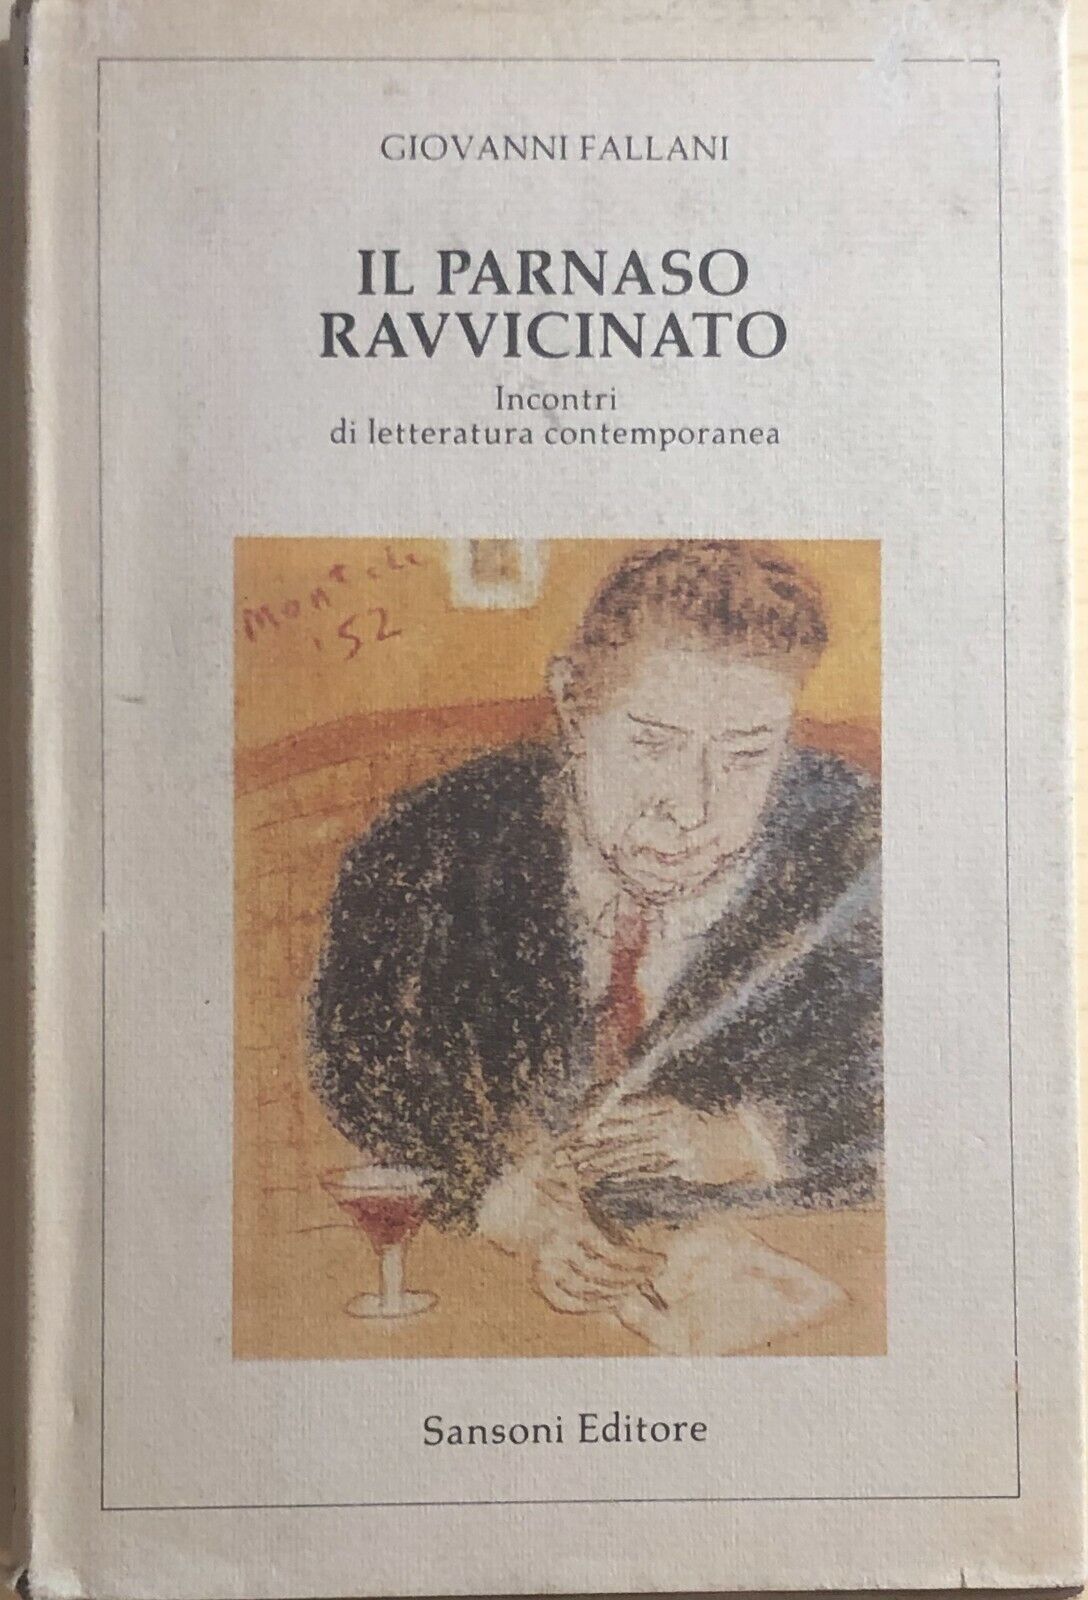 Il Parnaso ravvicinato di Giovanni Fallani, 1983, Sansoni Editori